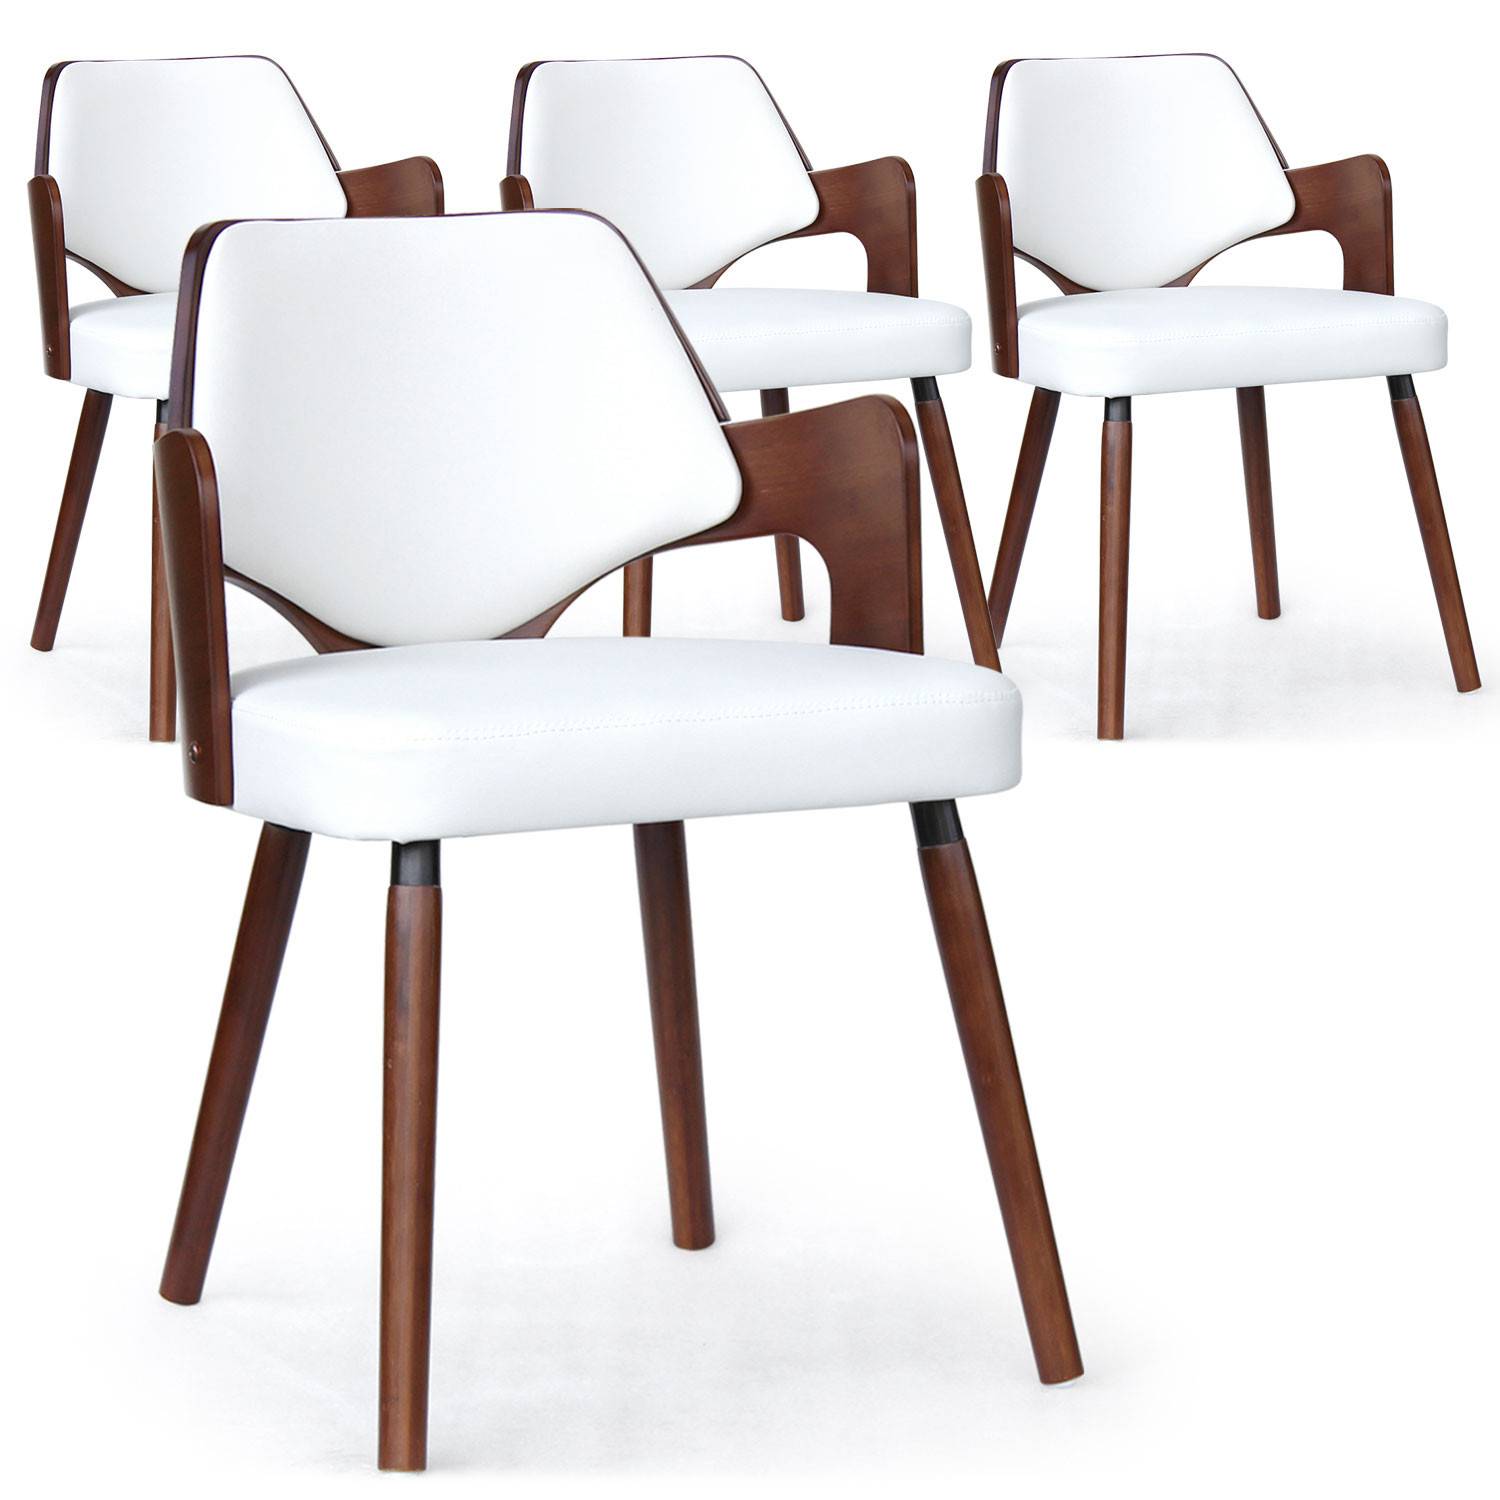 Juego de 4 sillas escandinavas Dima de madera color avellana y blanco